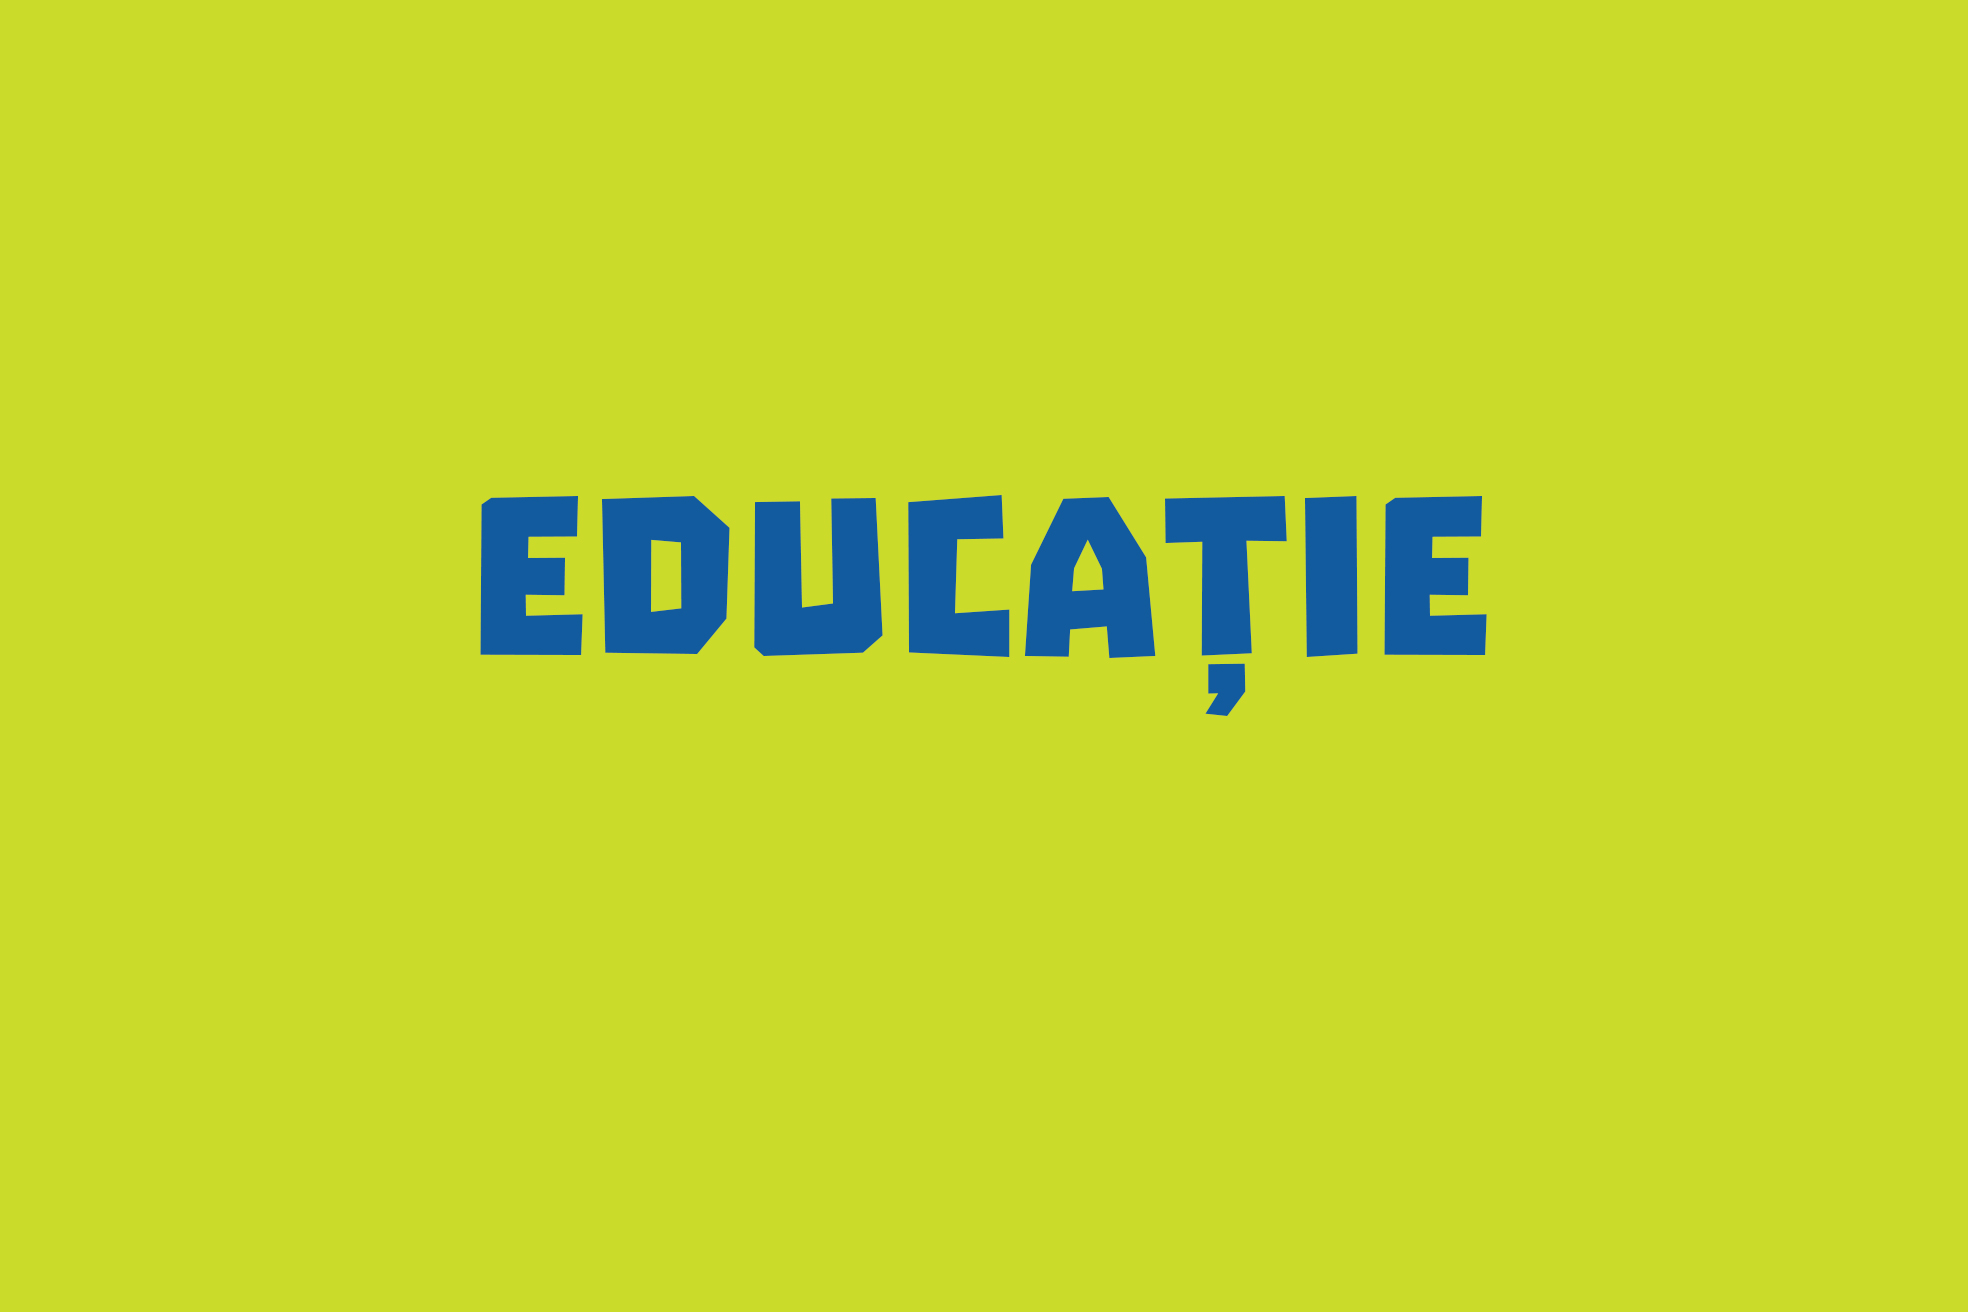 educatie_text